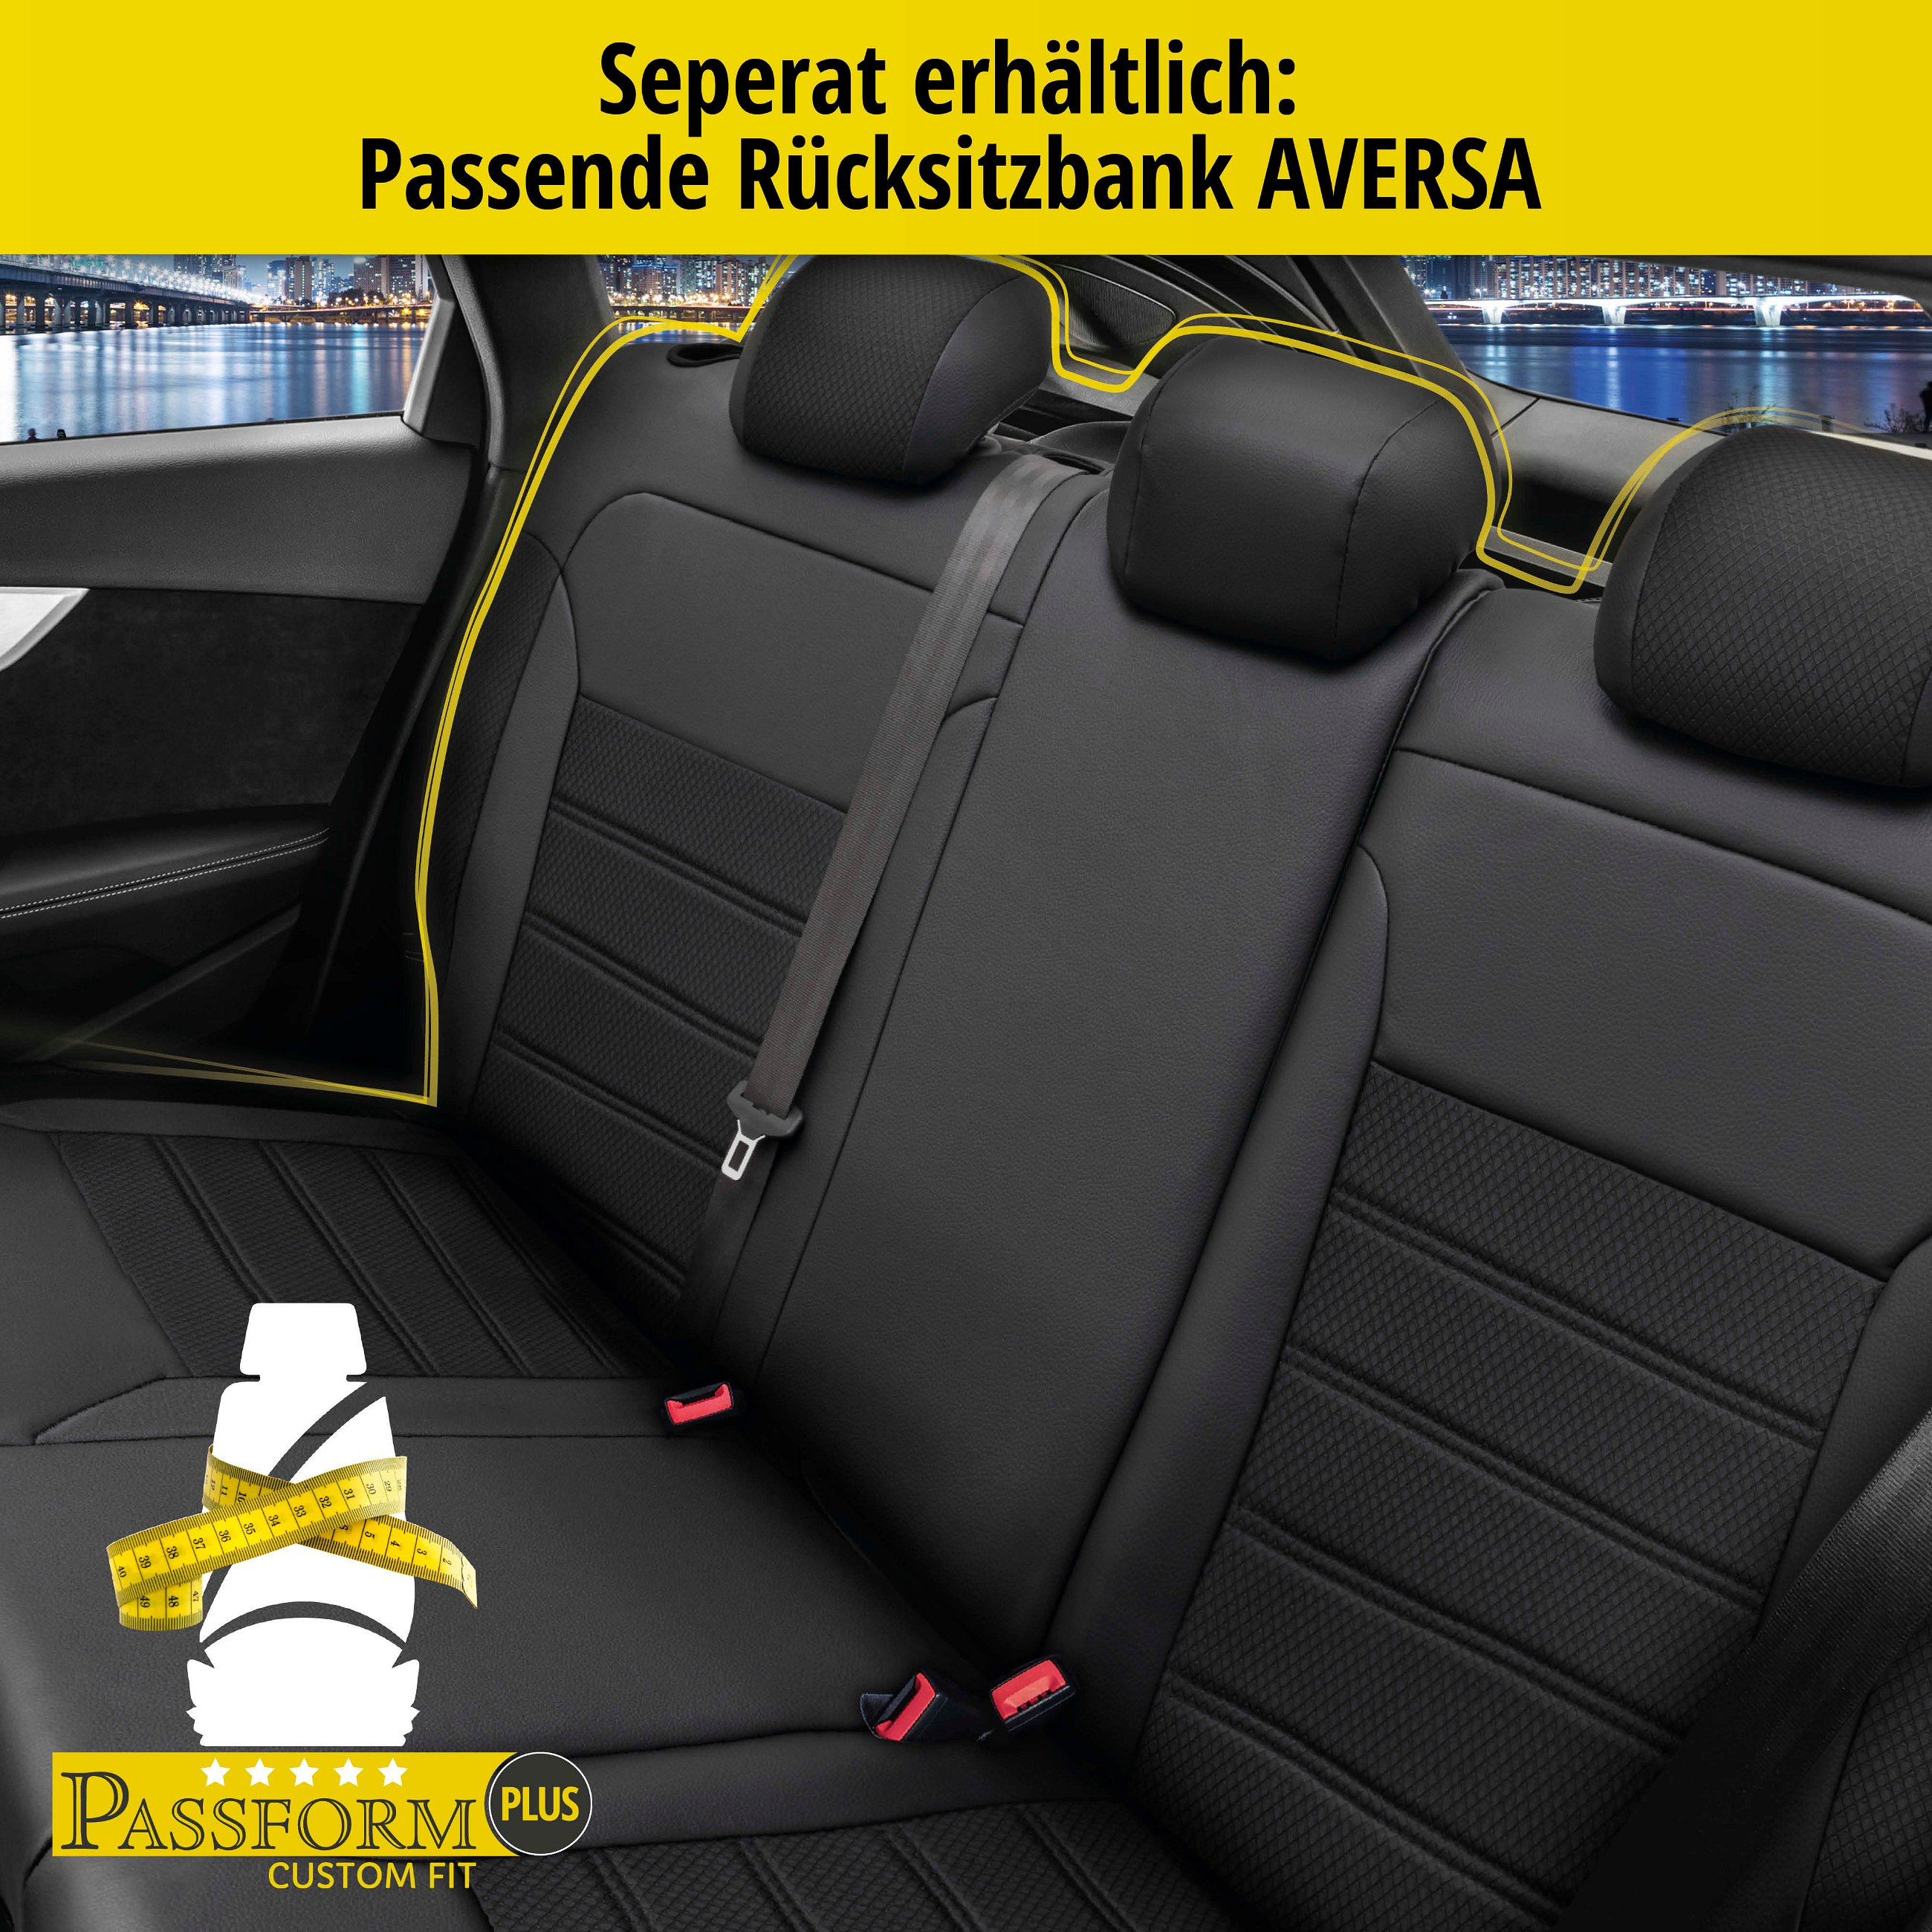 Passform Sitzbezug Aversa für Skoda Octavia 11/2012-Heute, 2 Einzelsitzbezüge für Normalsitze